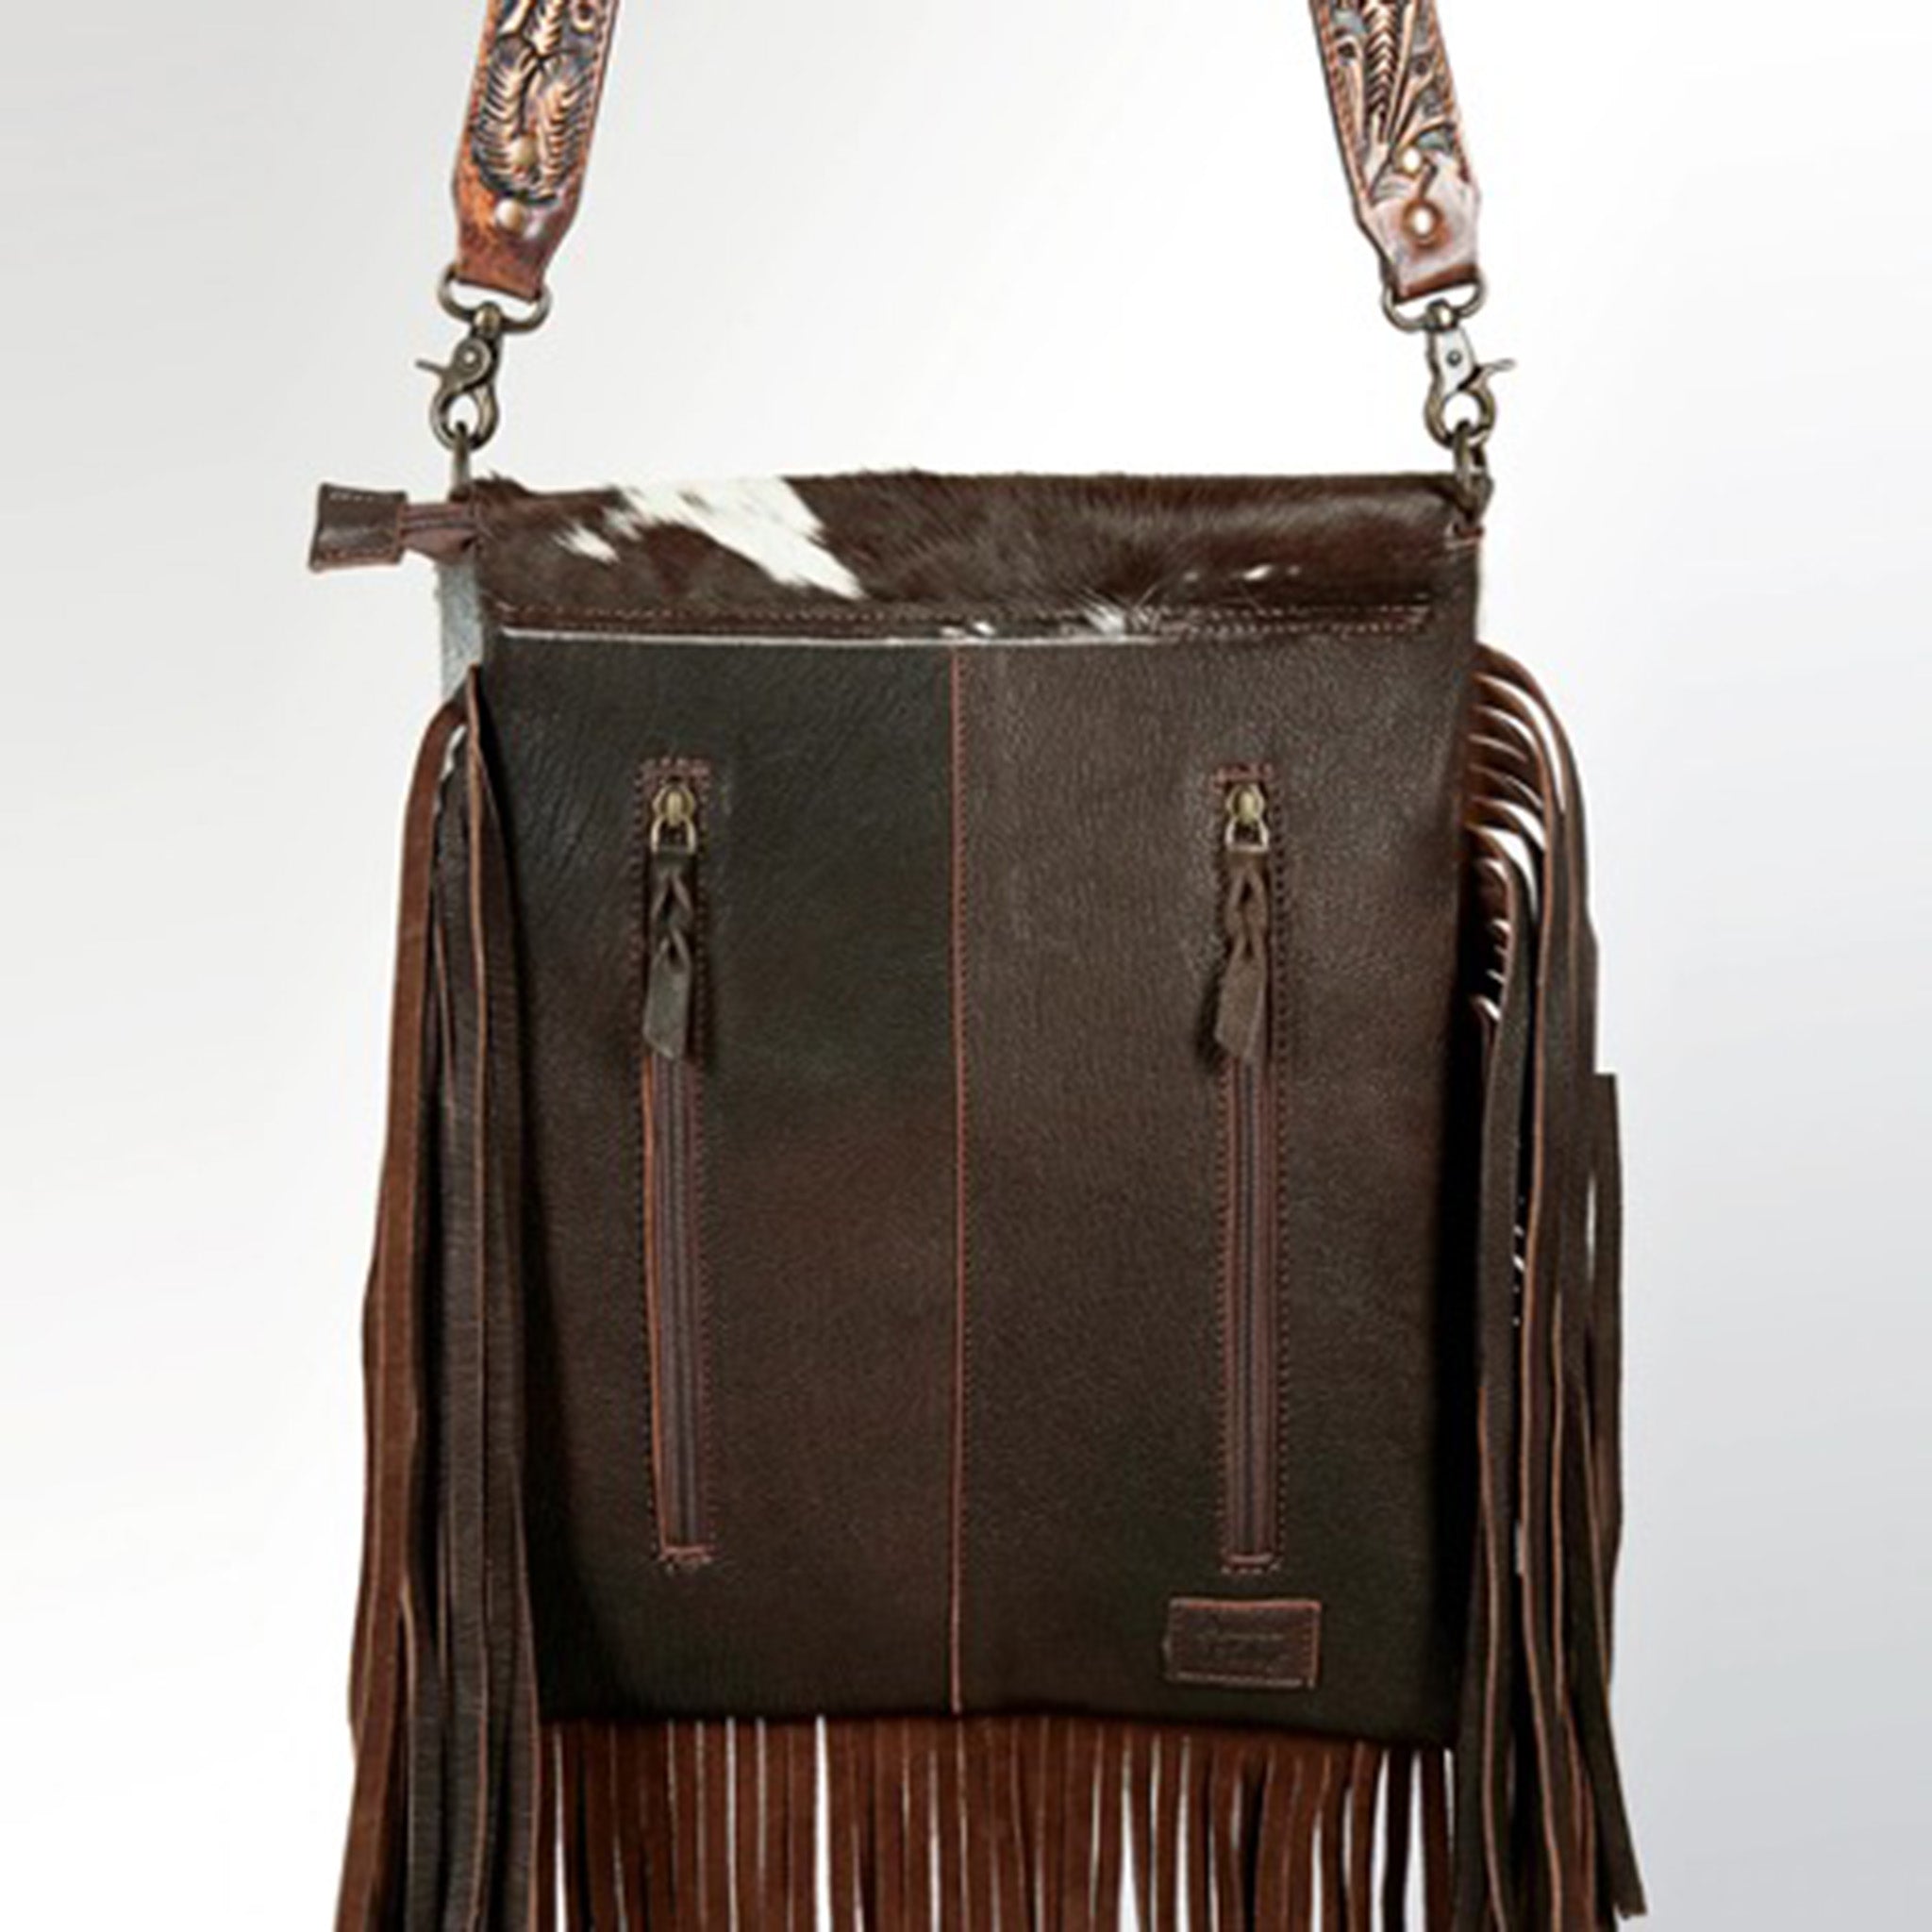 American Darling Floral Leather Fringe Bag – Western Edge, Ltd.